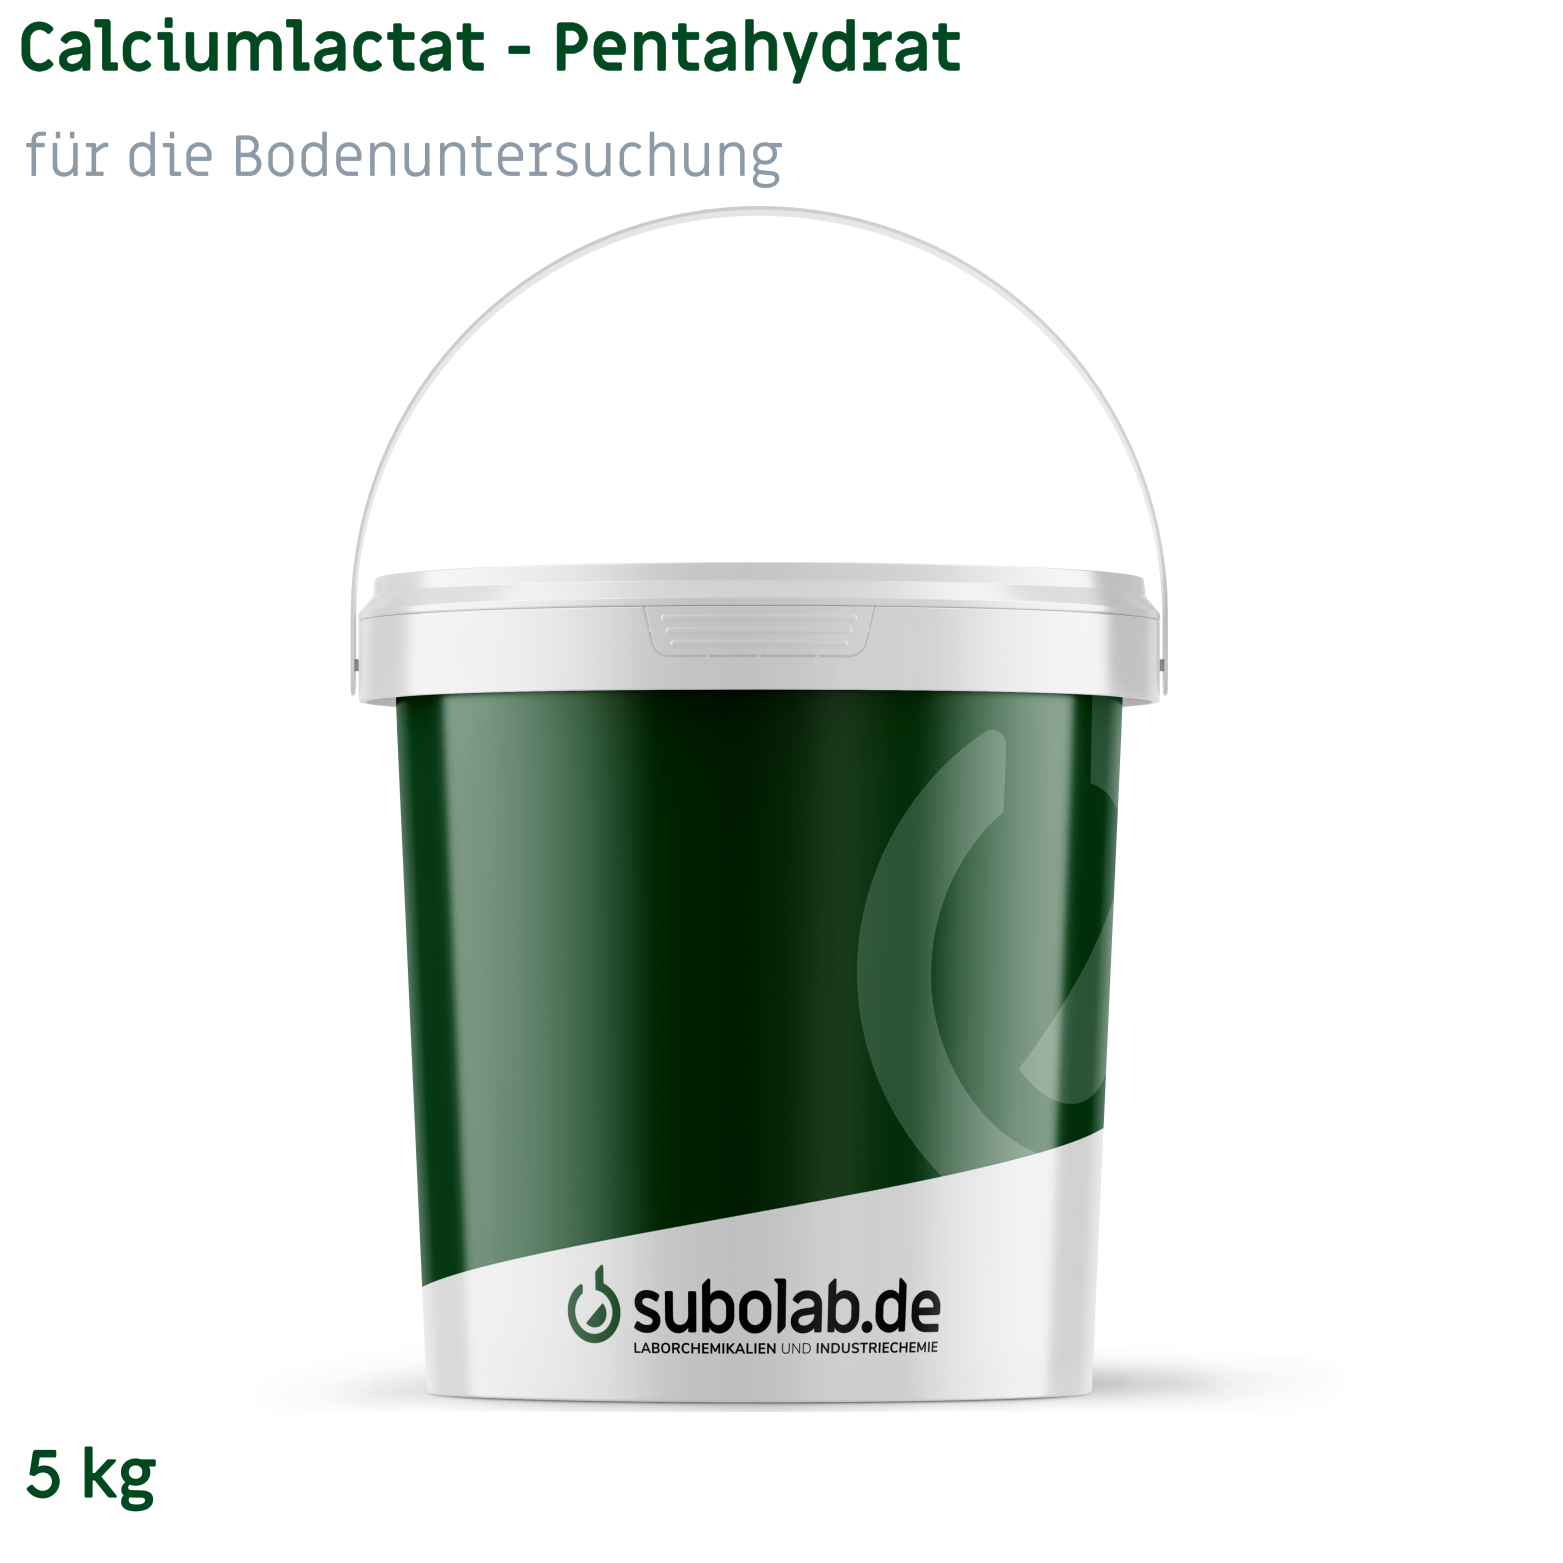 Bild von Calciumlactat - Pentahydrat für die Bodenuntersuchung (5 kg)